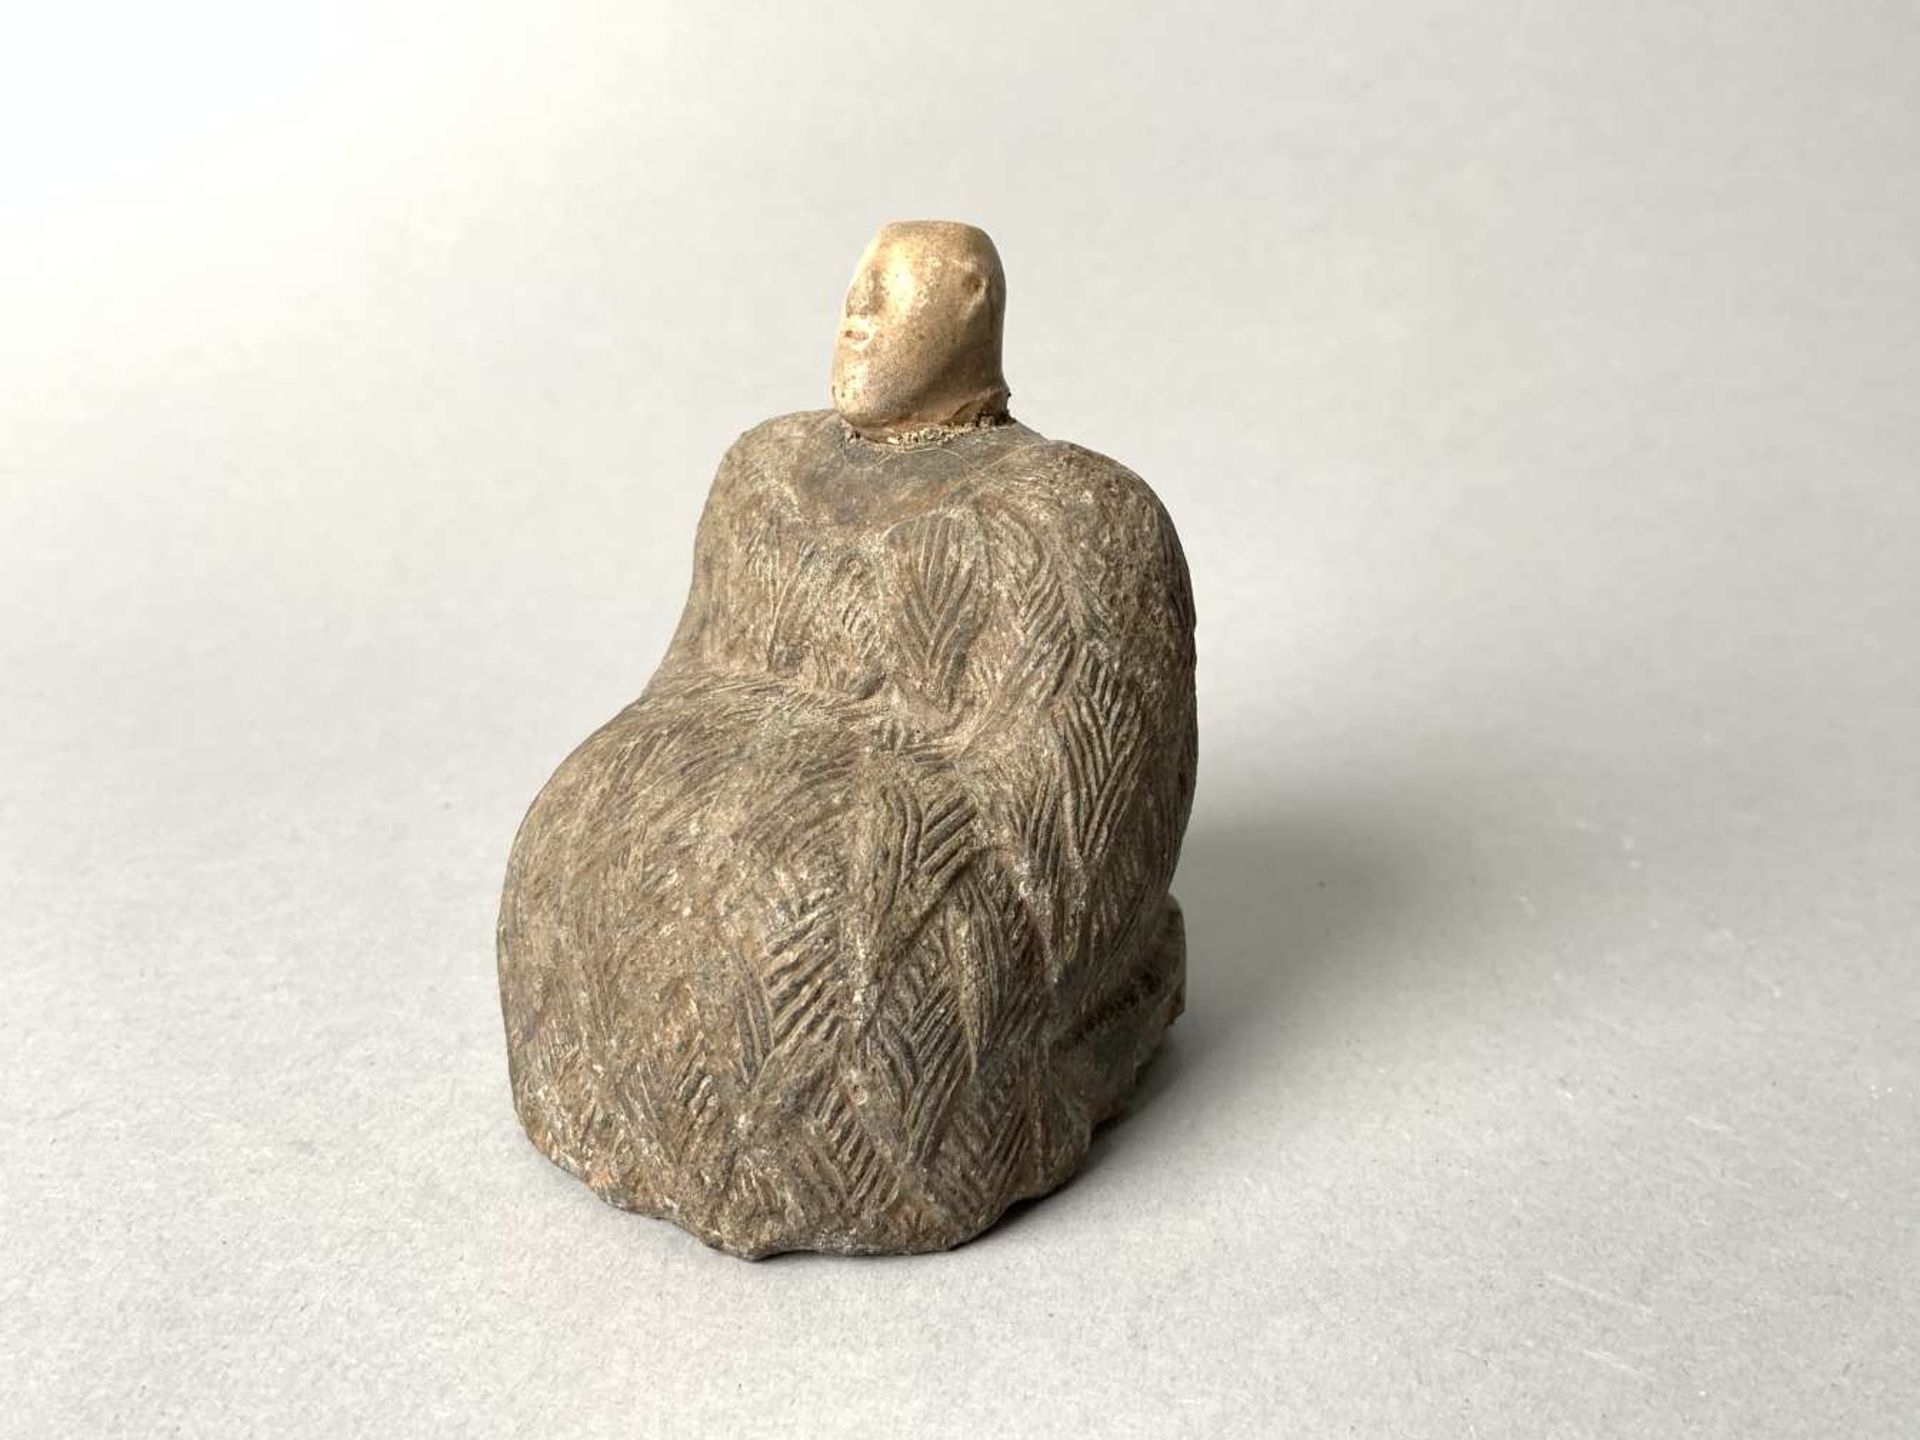 Statuette de Princesse dite "Bactriane". Elle représente une femme assise vêtue du Kaunakès. Le